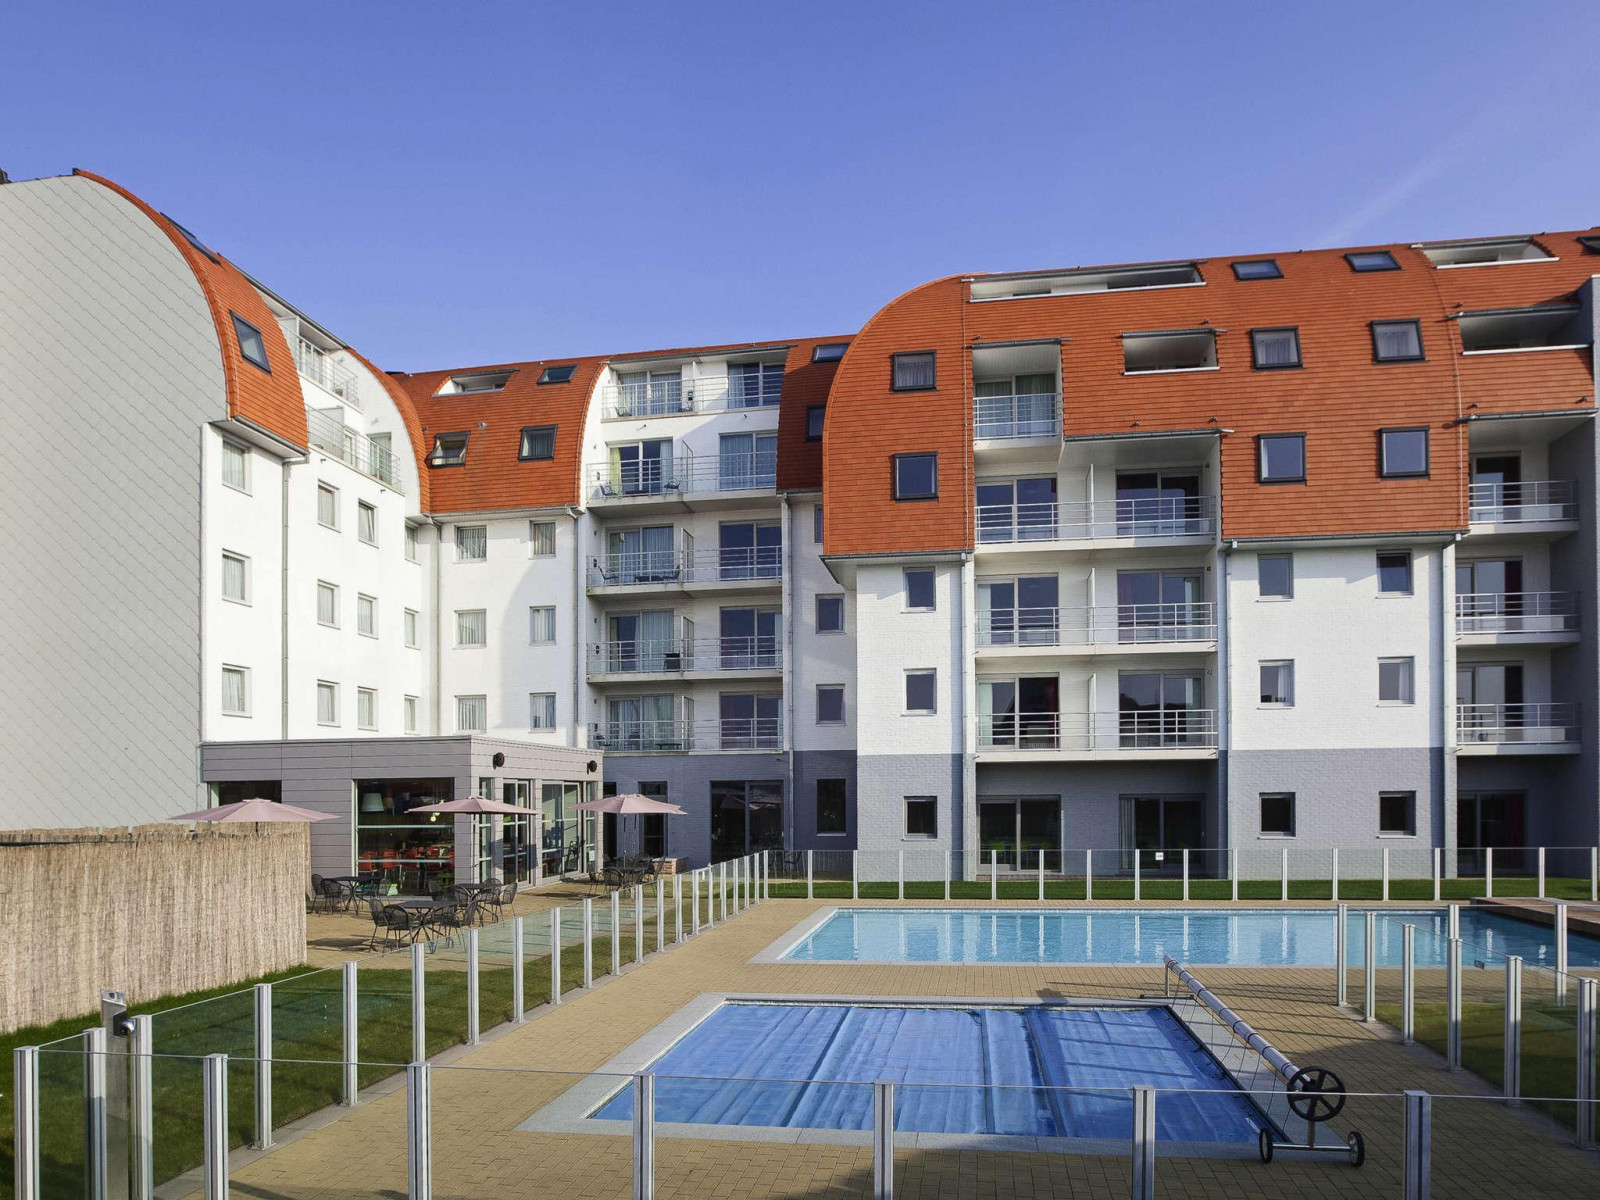 Mooi 6 persoons appartement aan de haven van Zeebrugge - Belgie - Europa - Zeebrugge